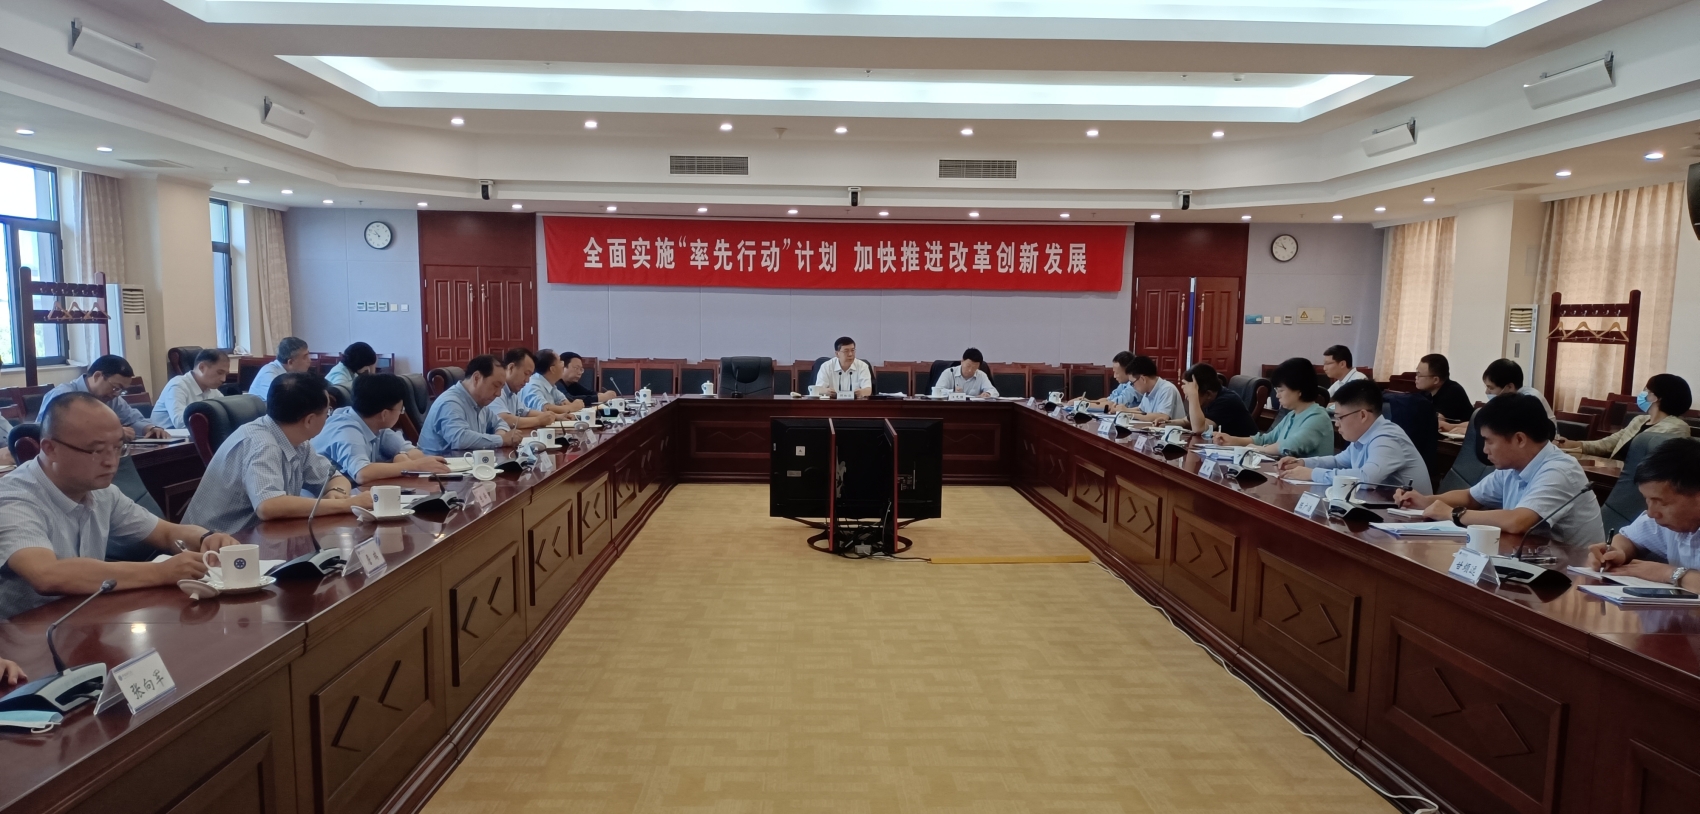 中科院“3H”工程推进委员会组织召开第三次全体会议